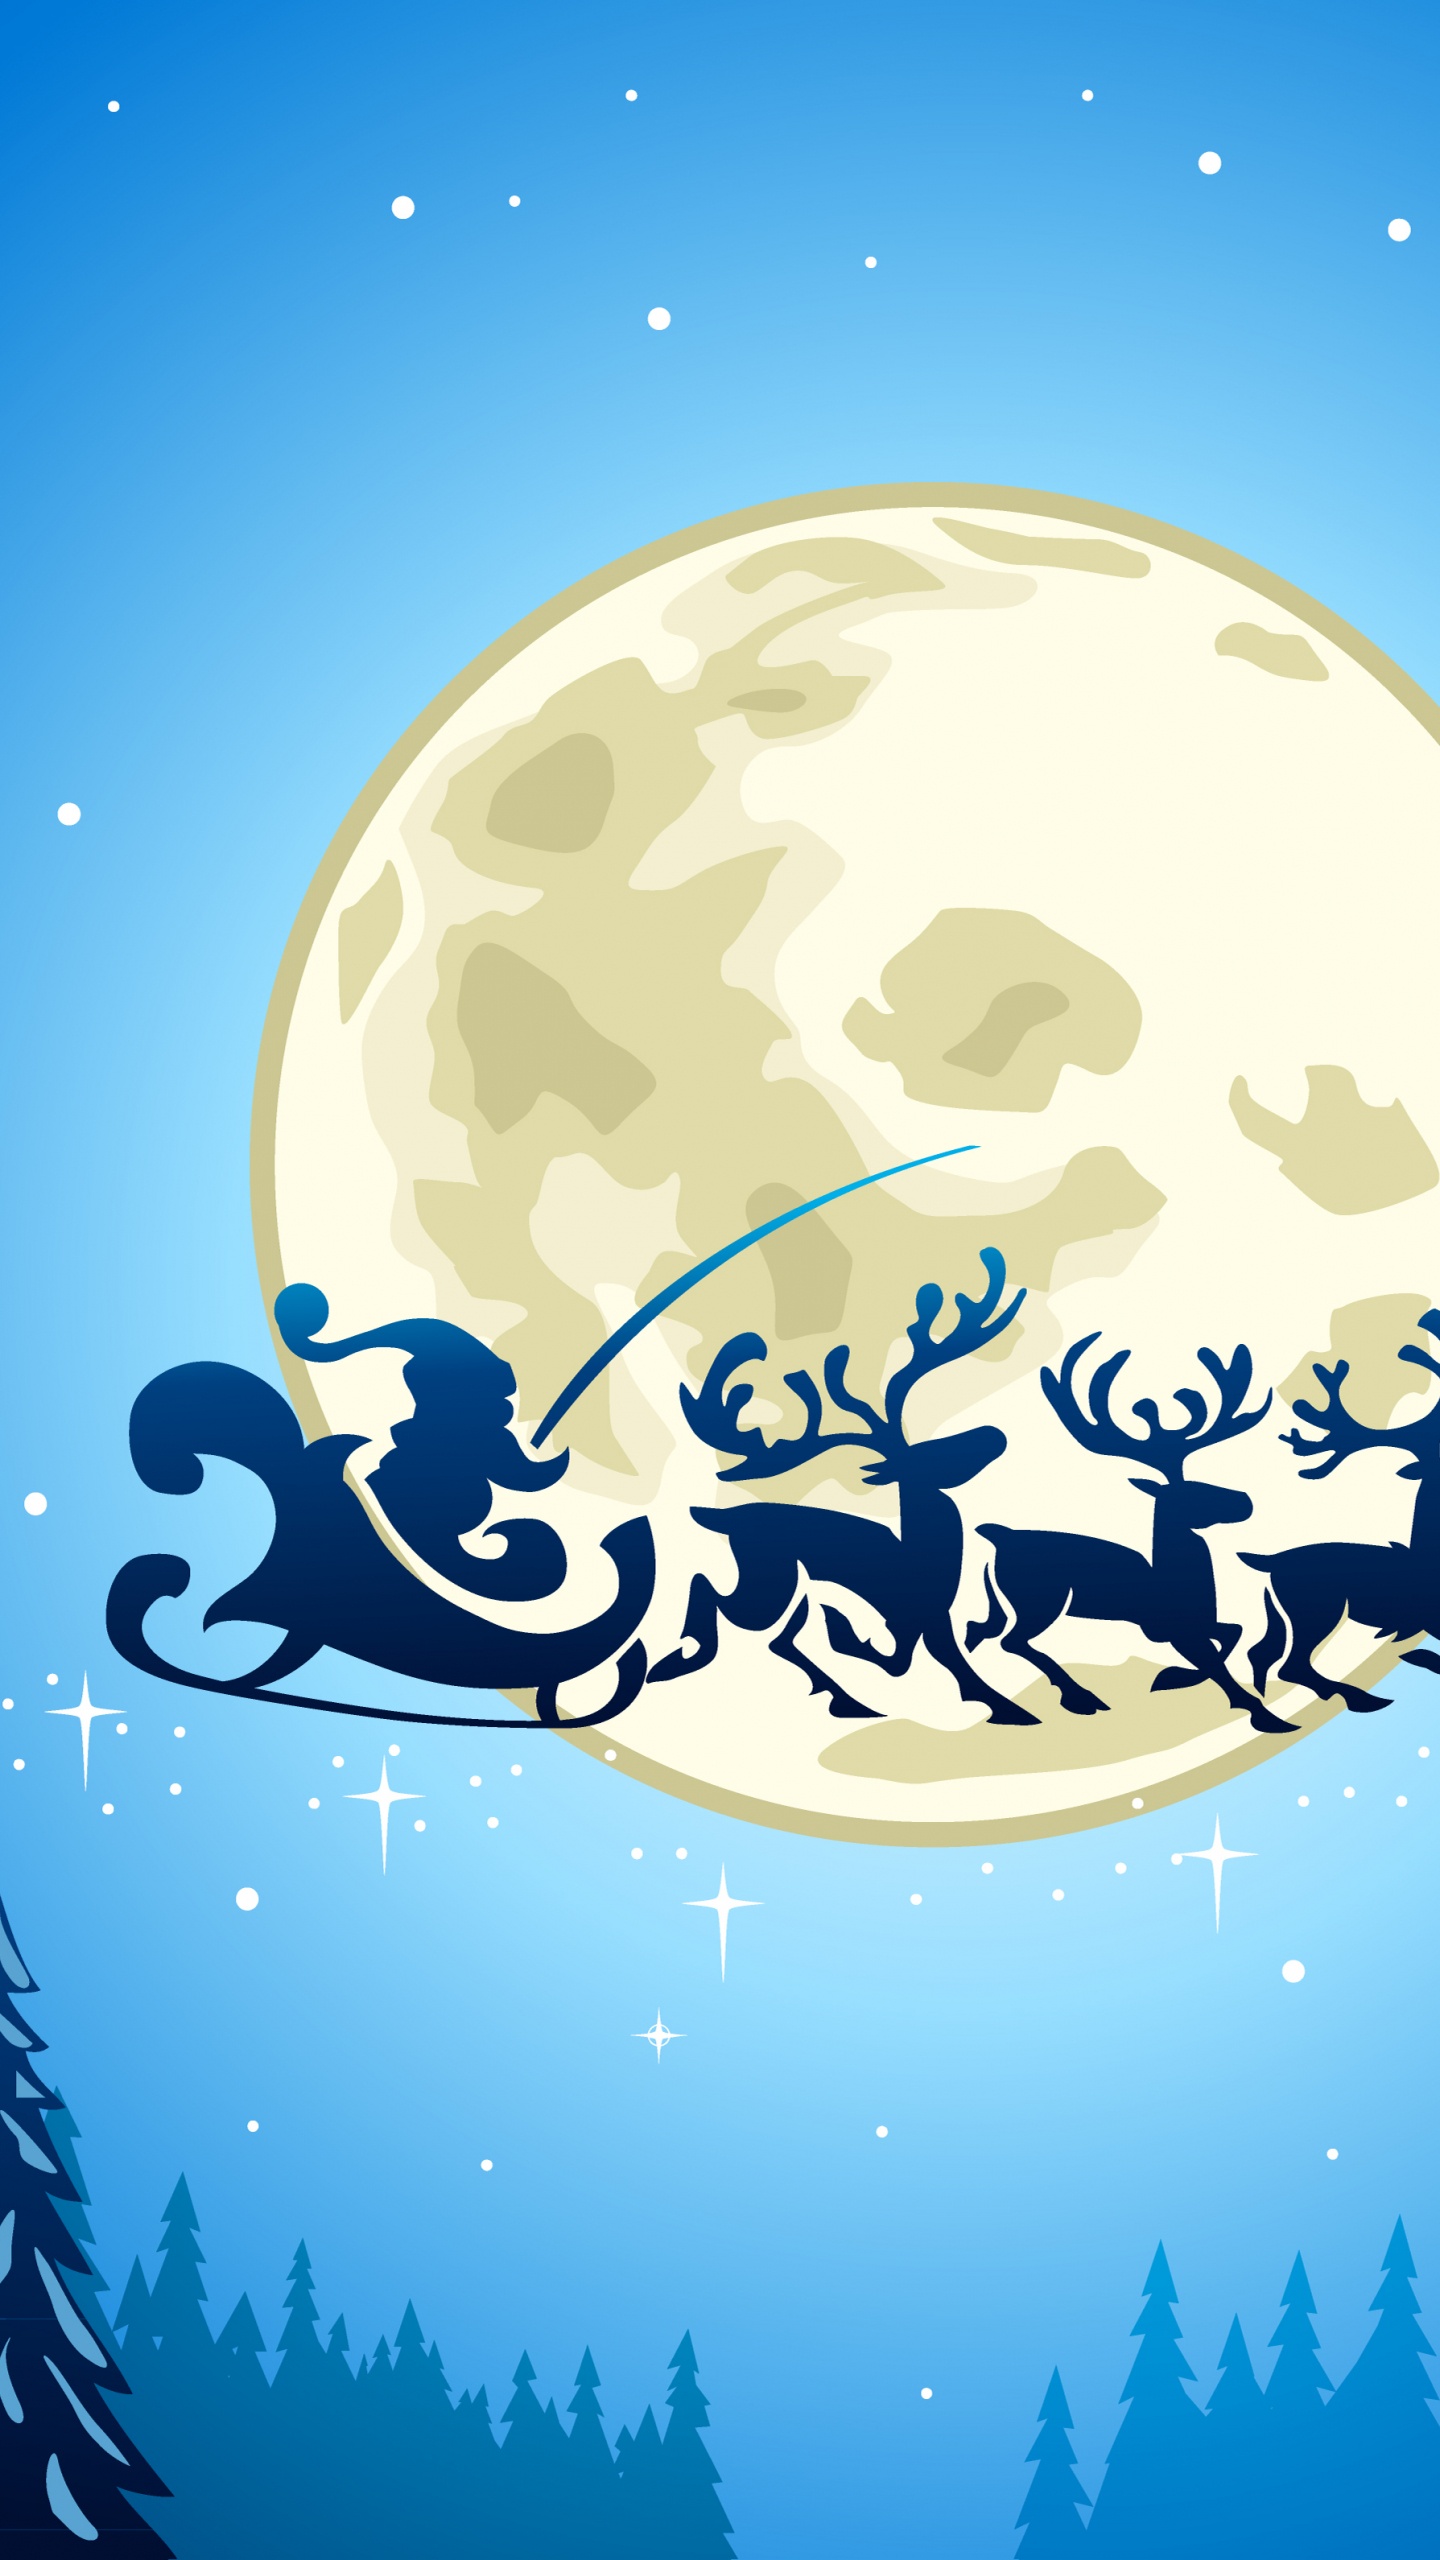 Le Jour De Noël, Santa Claus, Illustration, Ded Moroz, Blue. Wallpaper in 1440x2560 Resolution